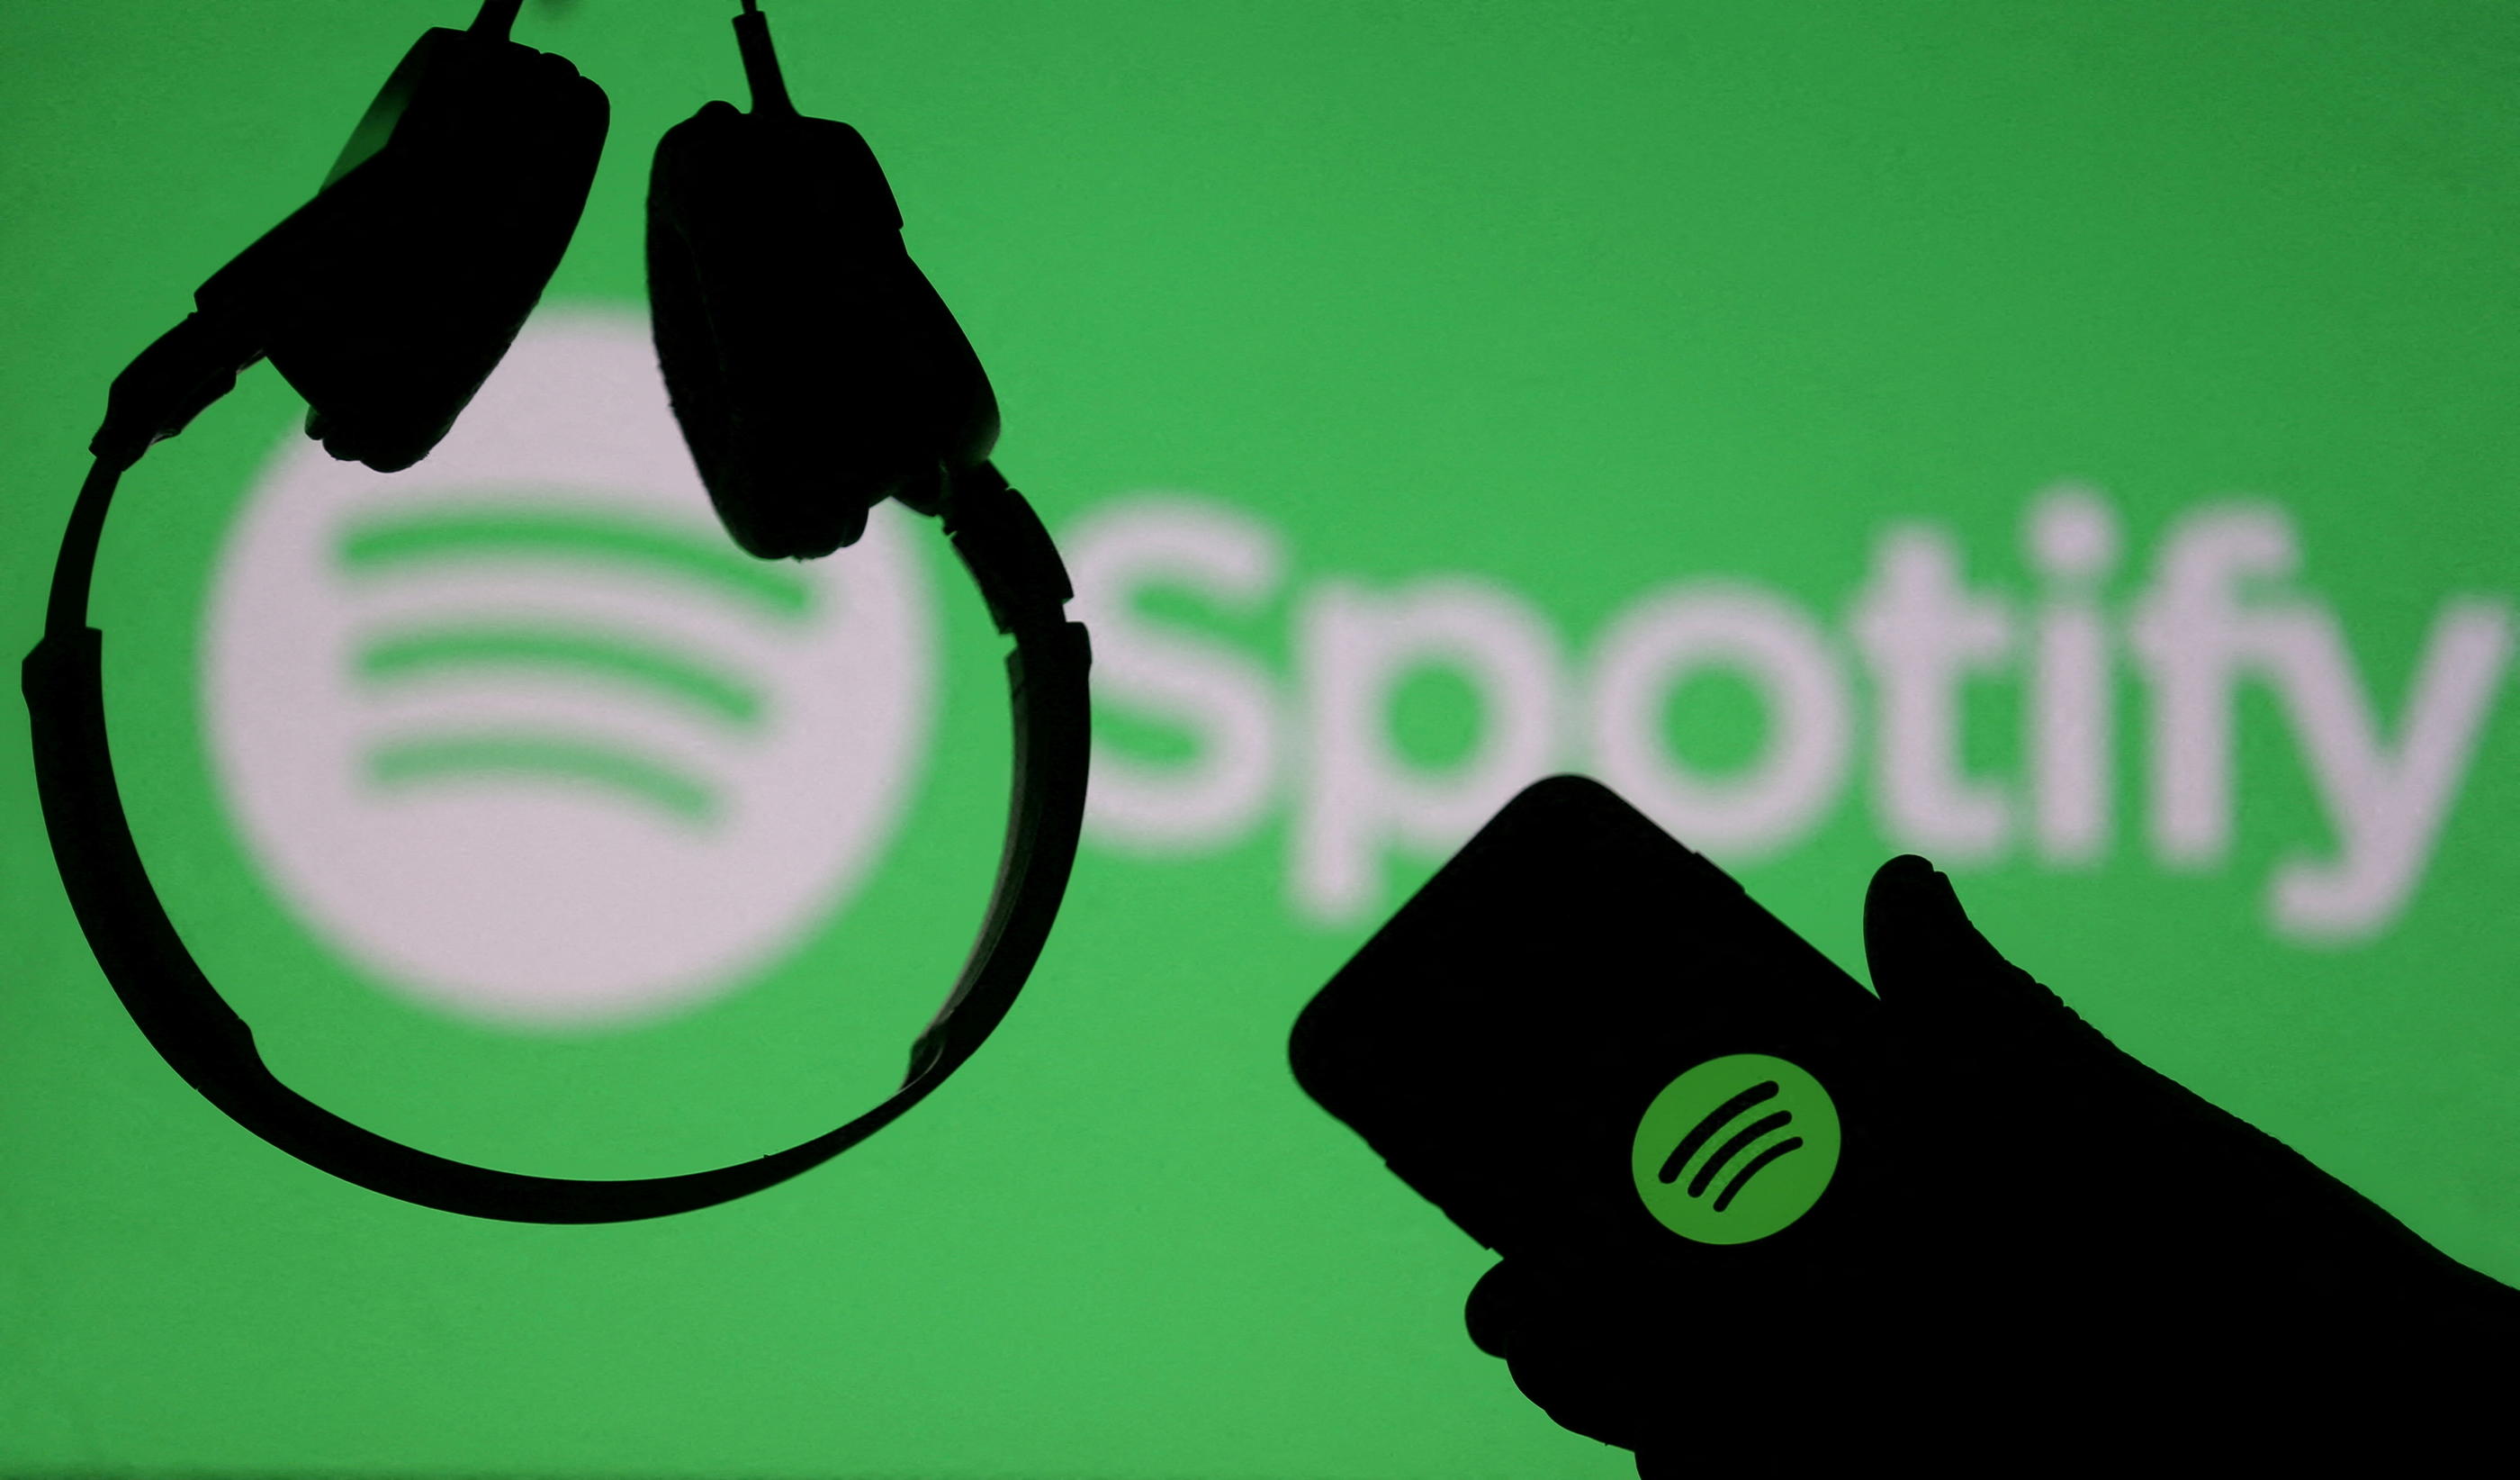 La plateforme musicale Spotify n'est pas derrière cette campagne de mails qui est donc une arnaque. REUTERS/Dado Ruvic